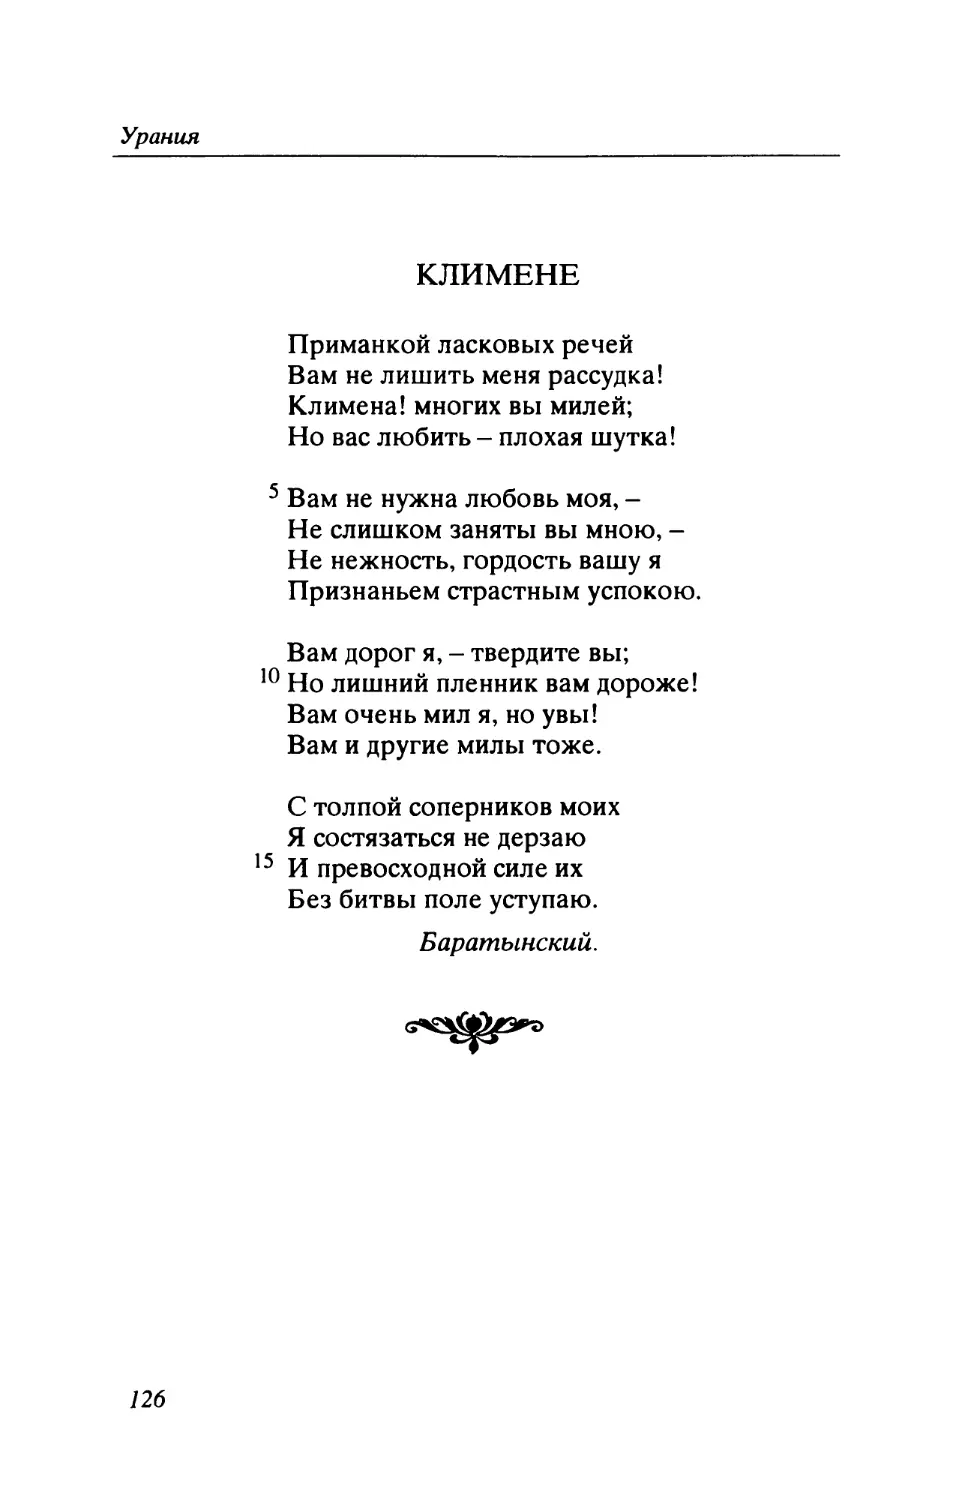 Е.А. Баратынский. Климене